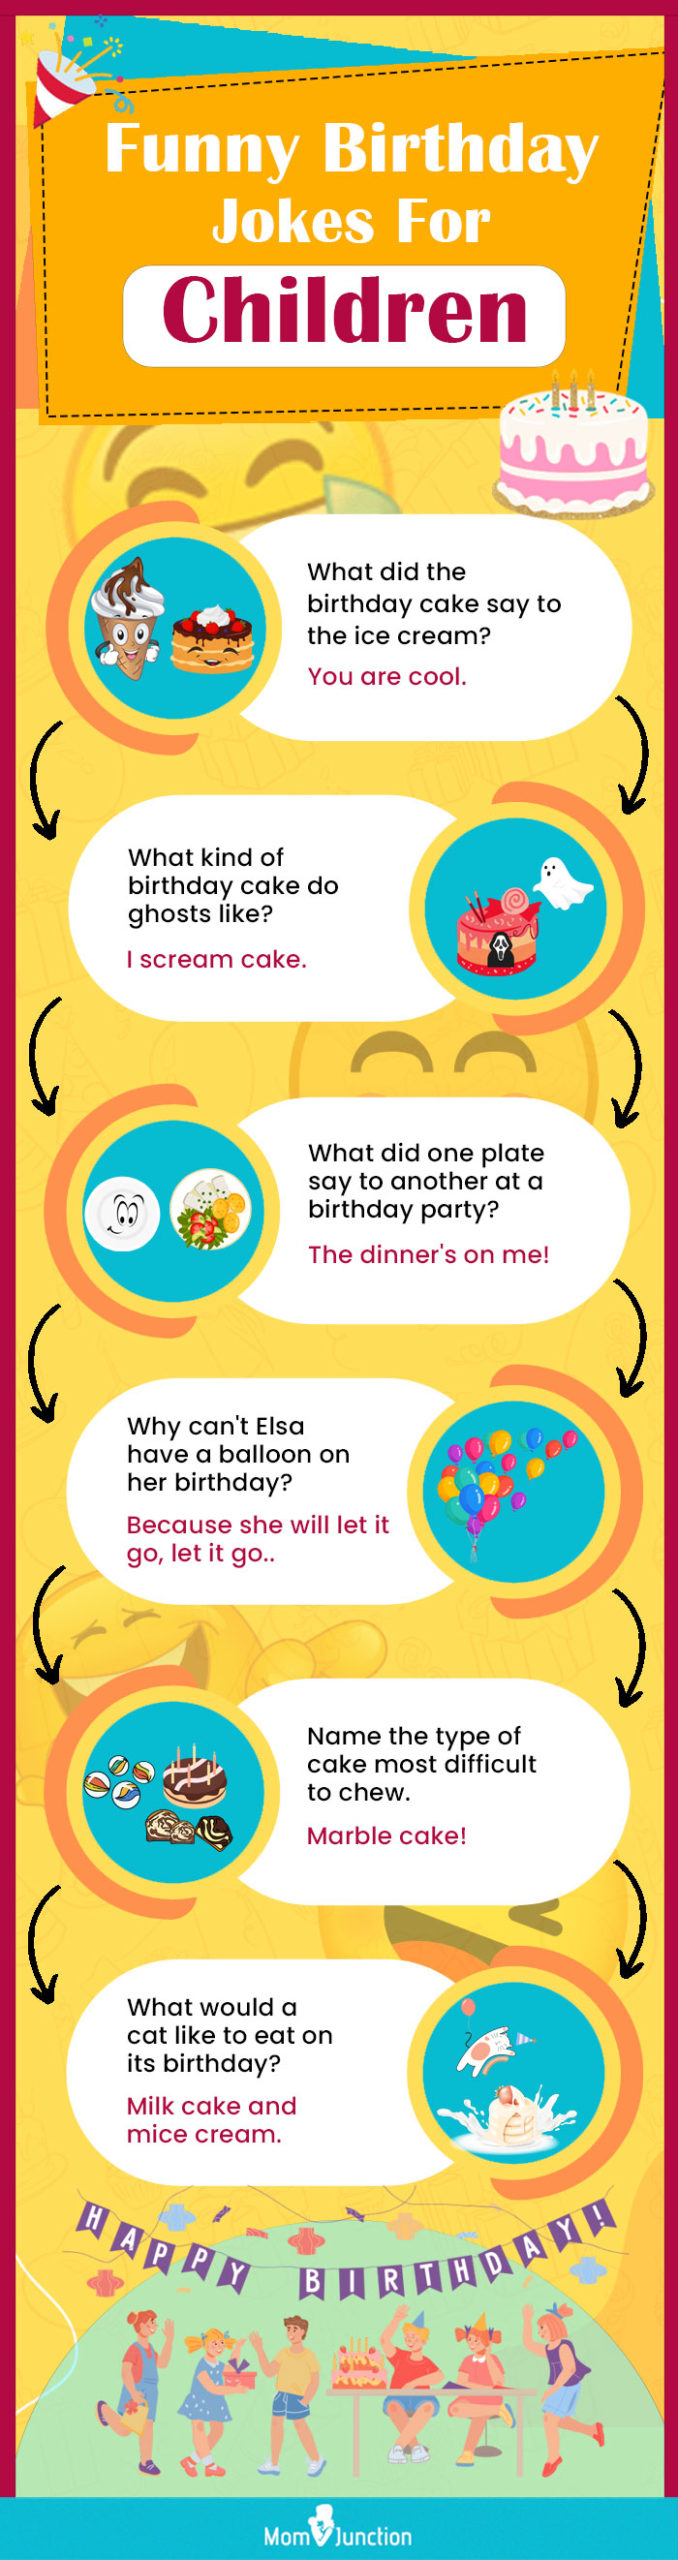 funny birthday jokes for children (infographic)